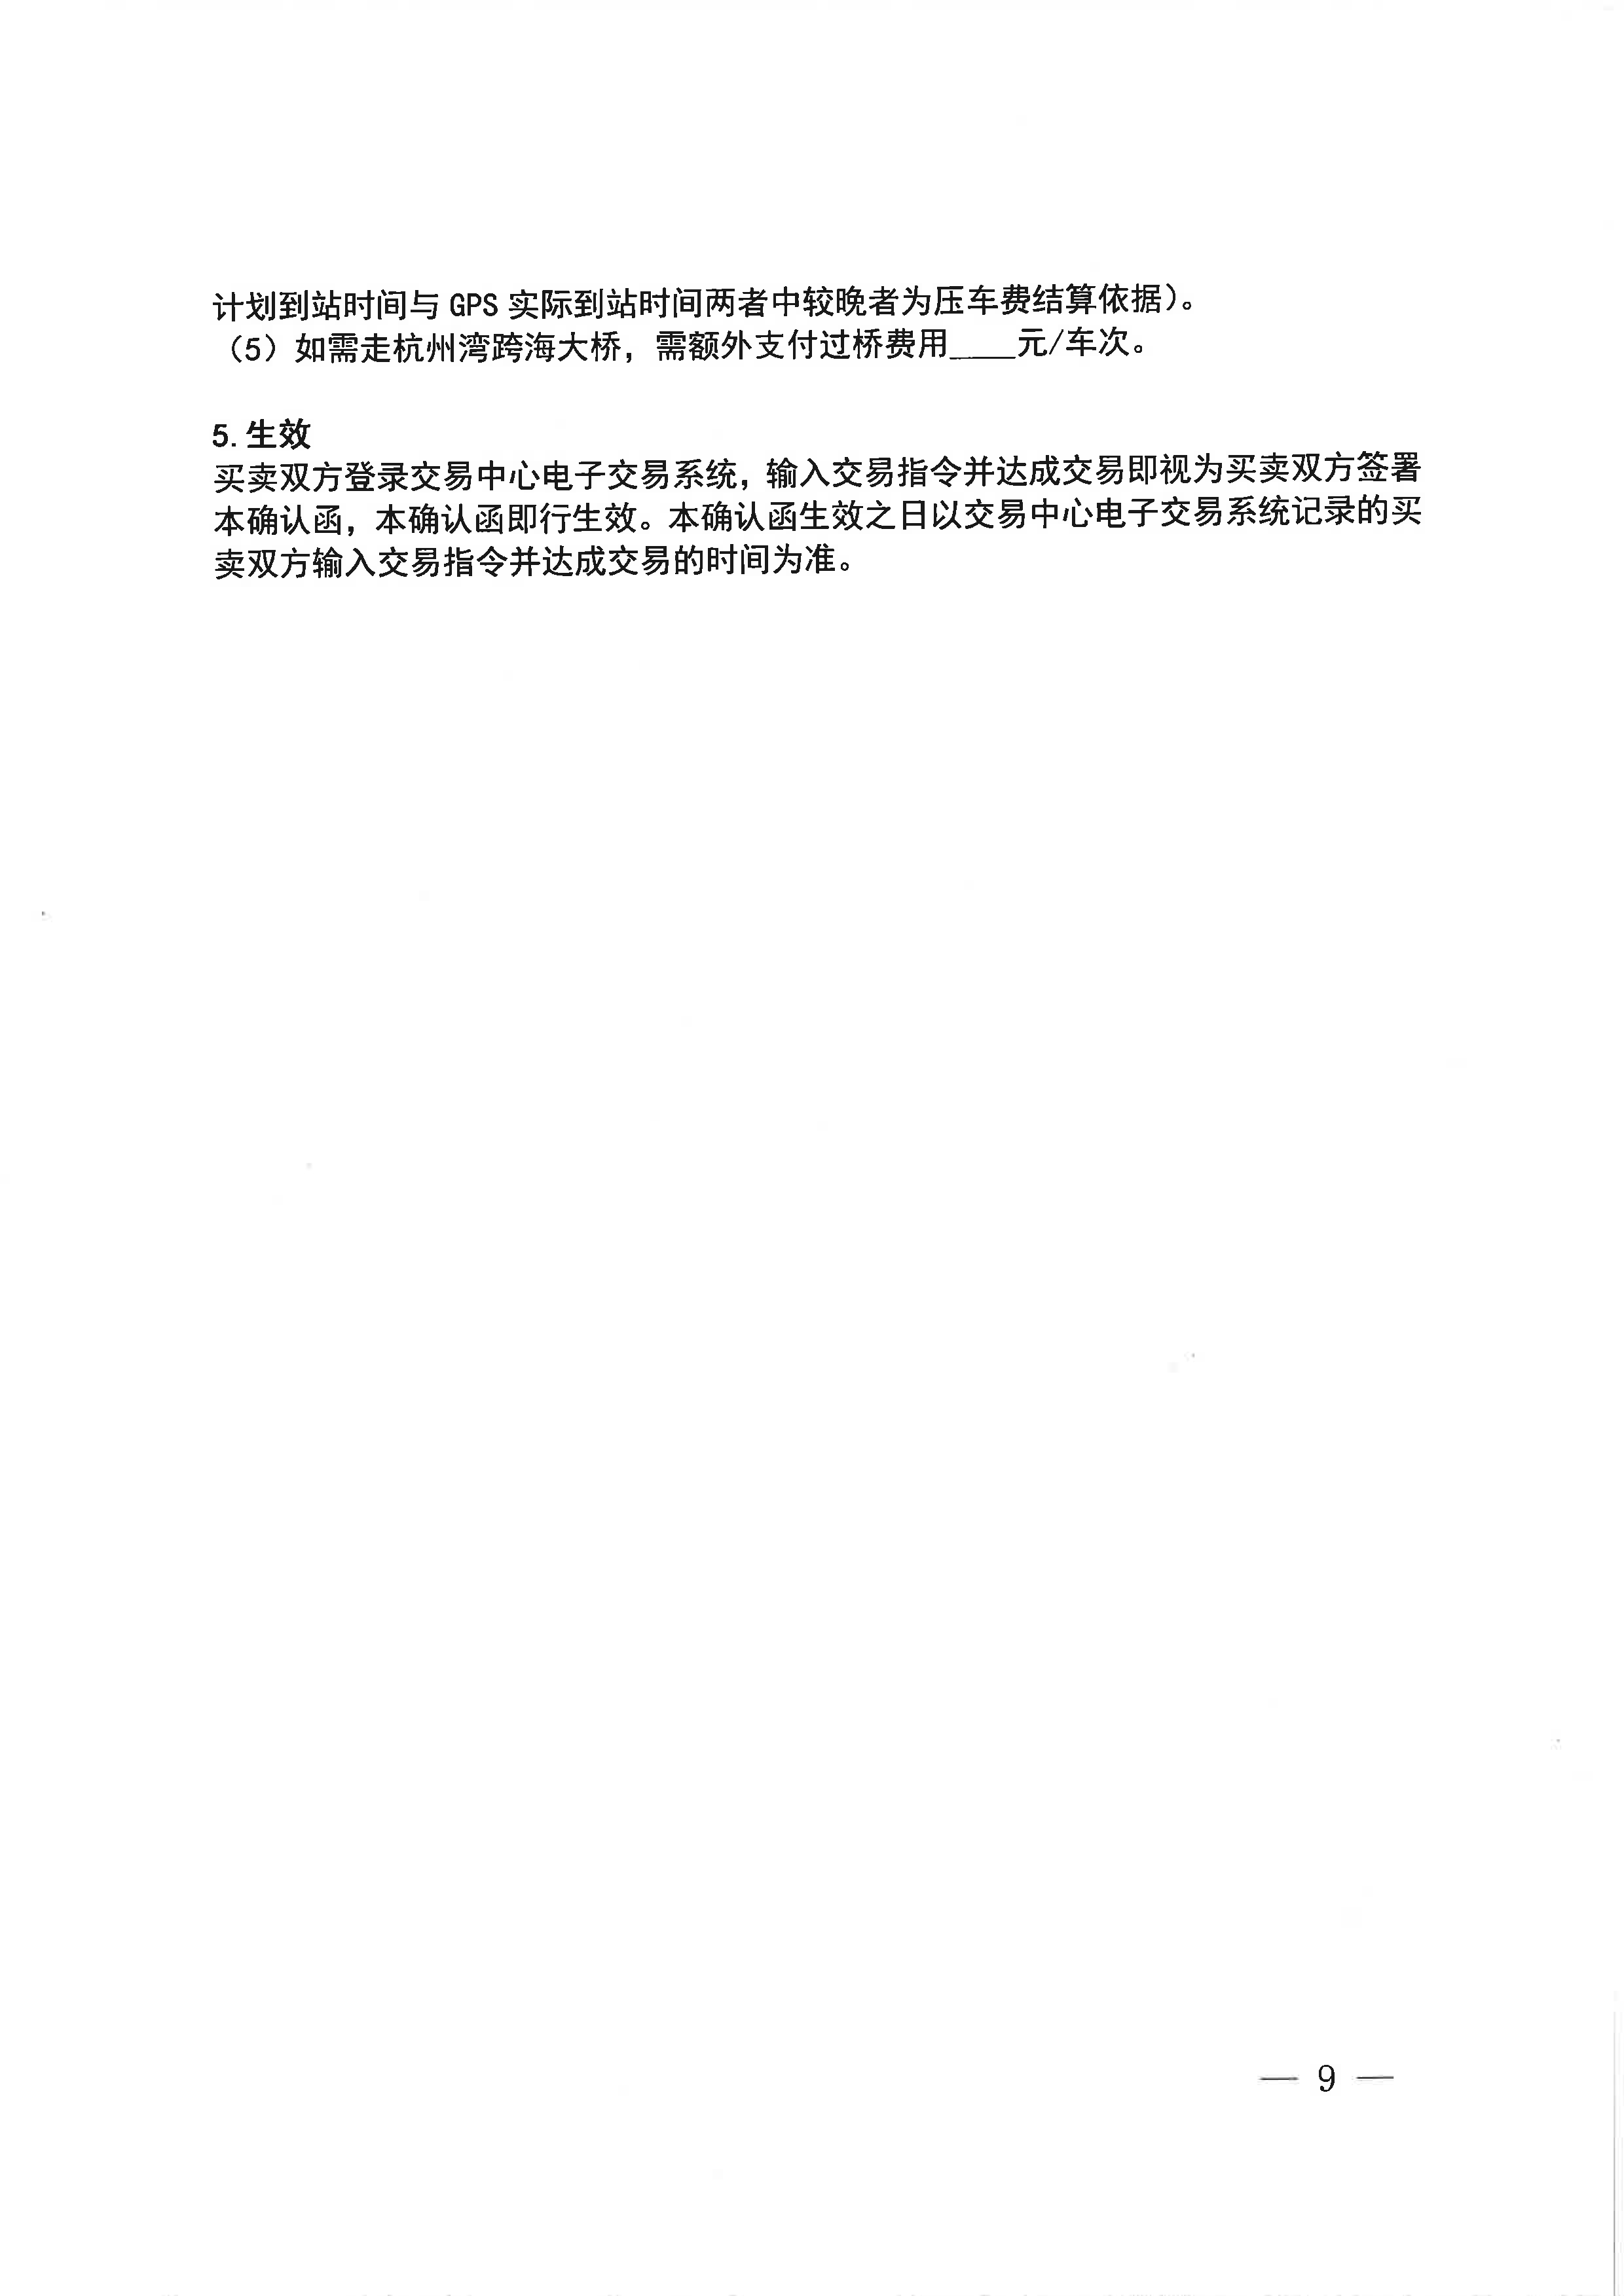 中海石油气电集团浙江分公司关于开展运力竞价交易的公告_页面_9.png